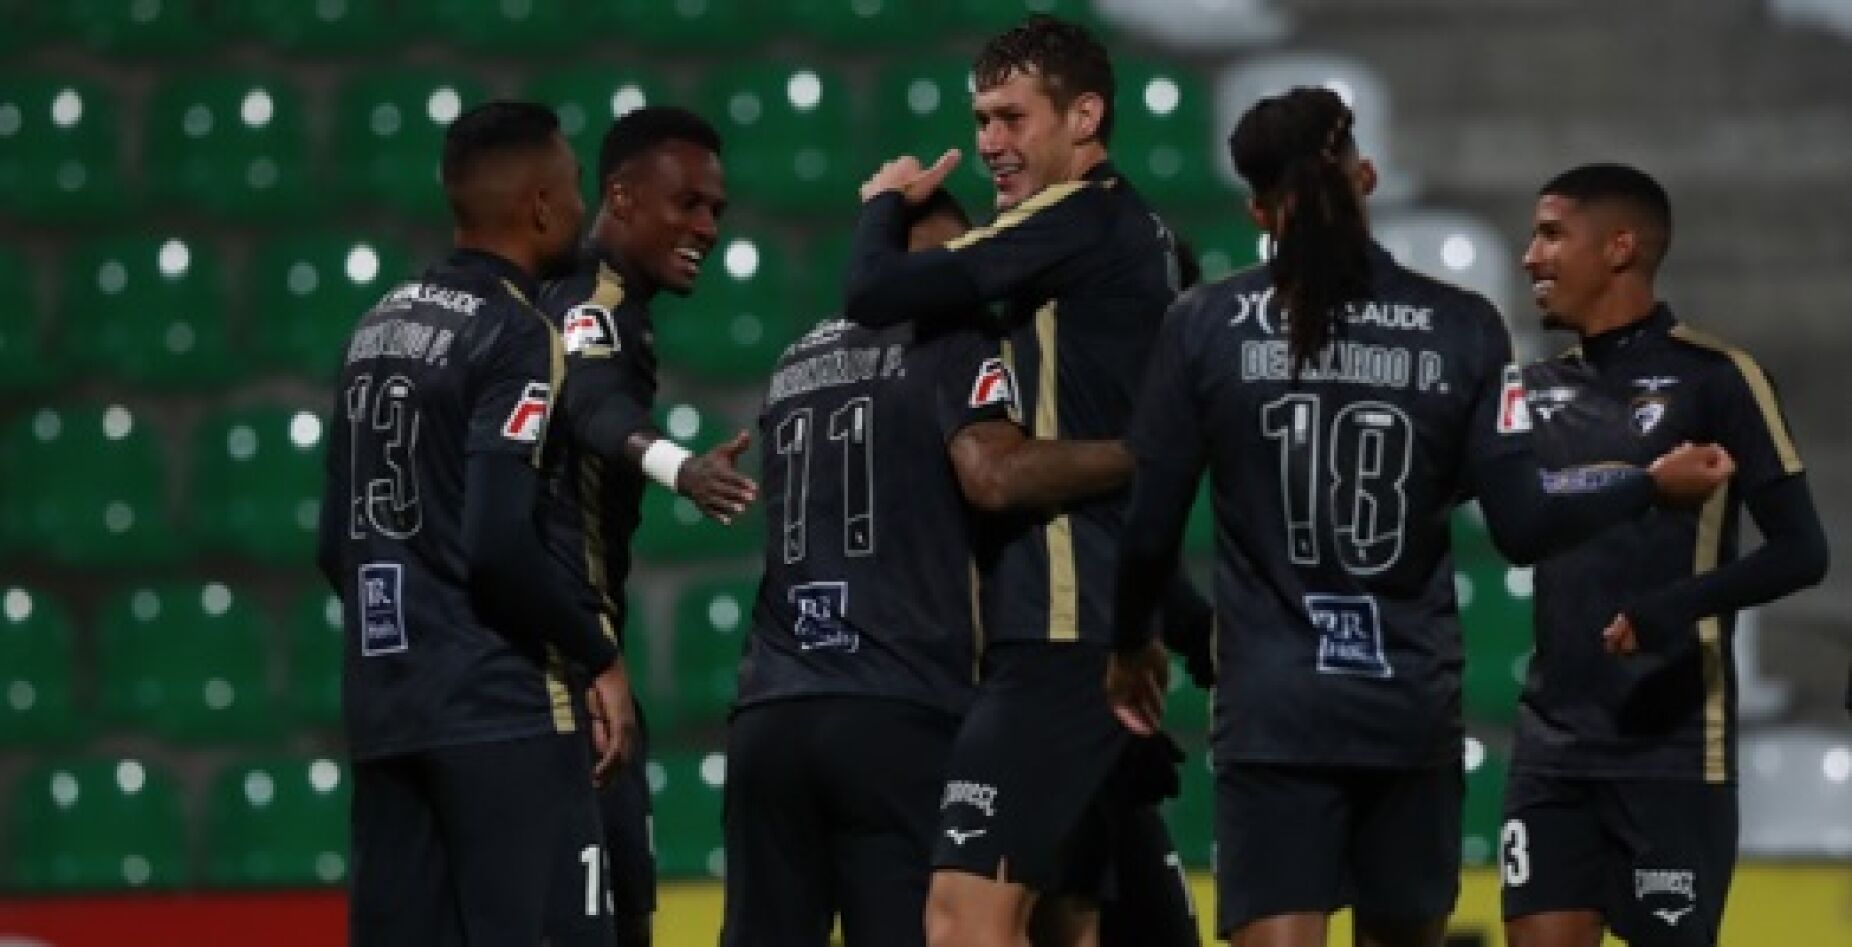 Veja como Hélio Varela fez o empate no Portimonense-Famalicão